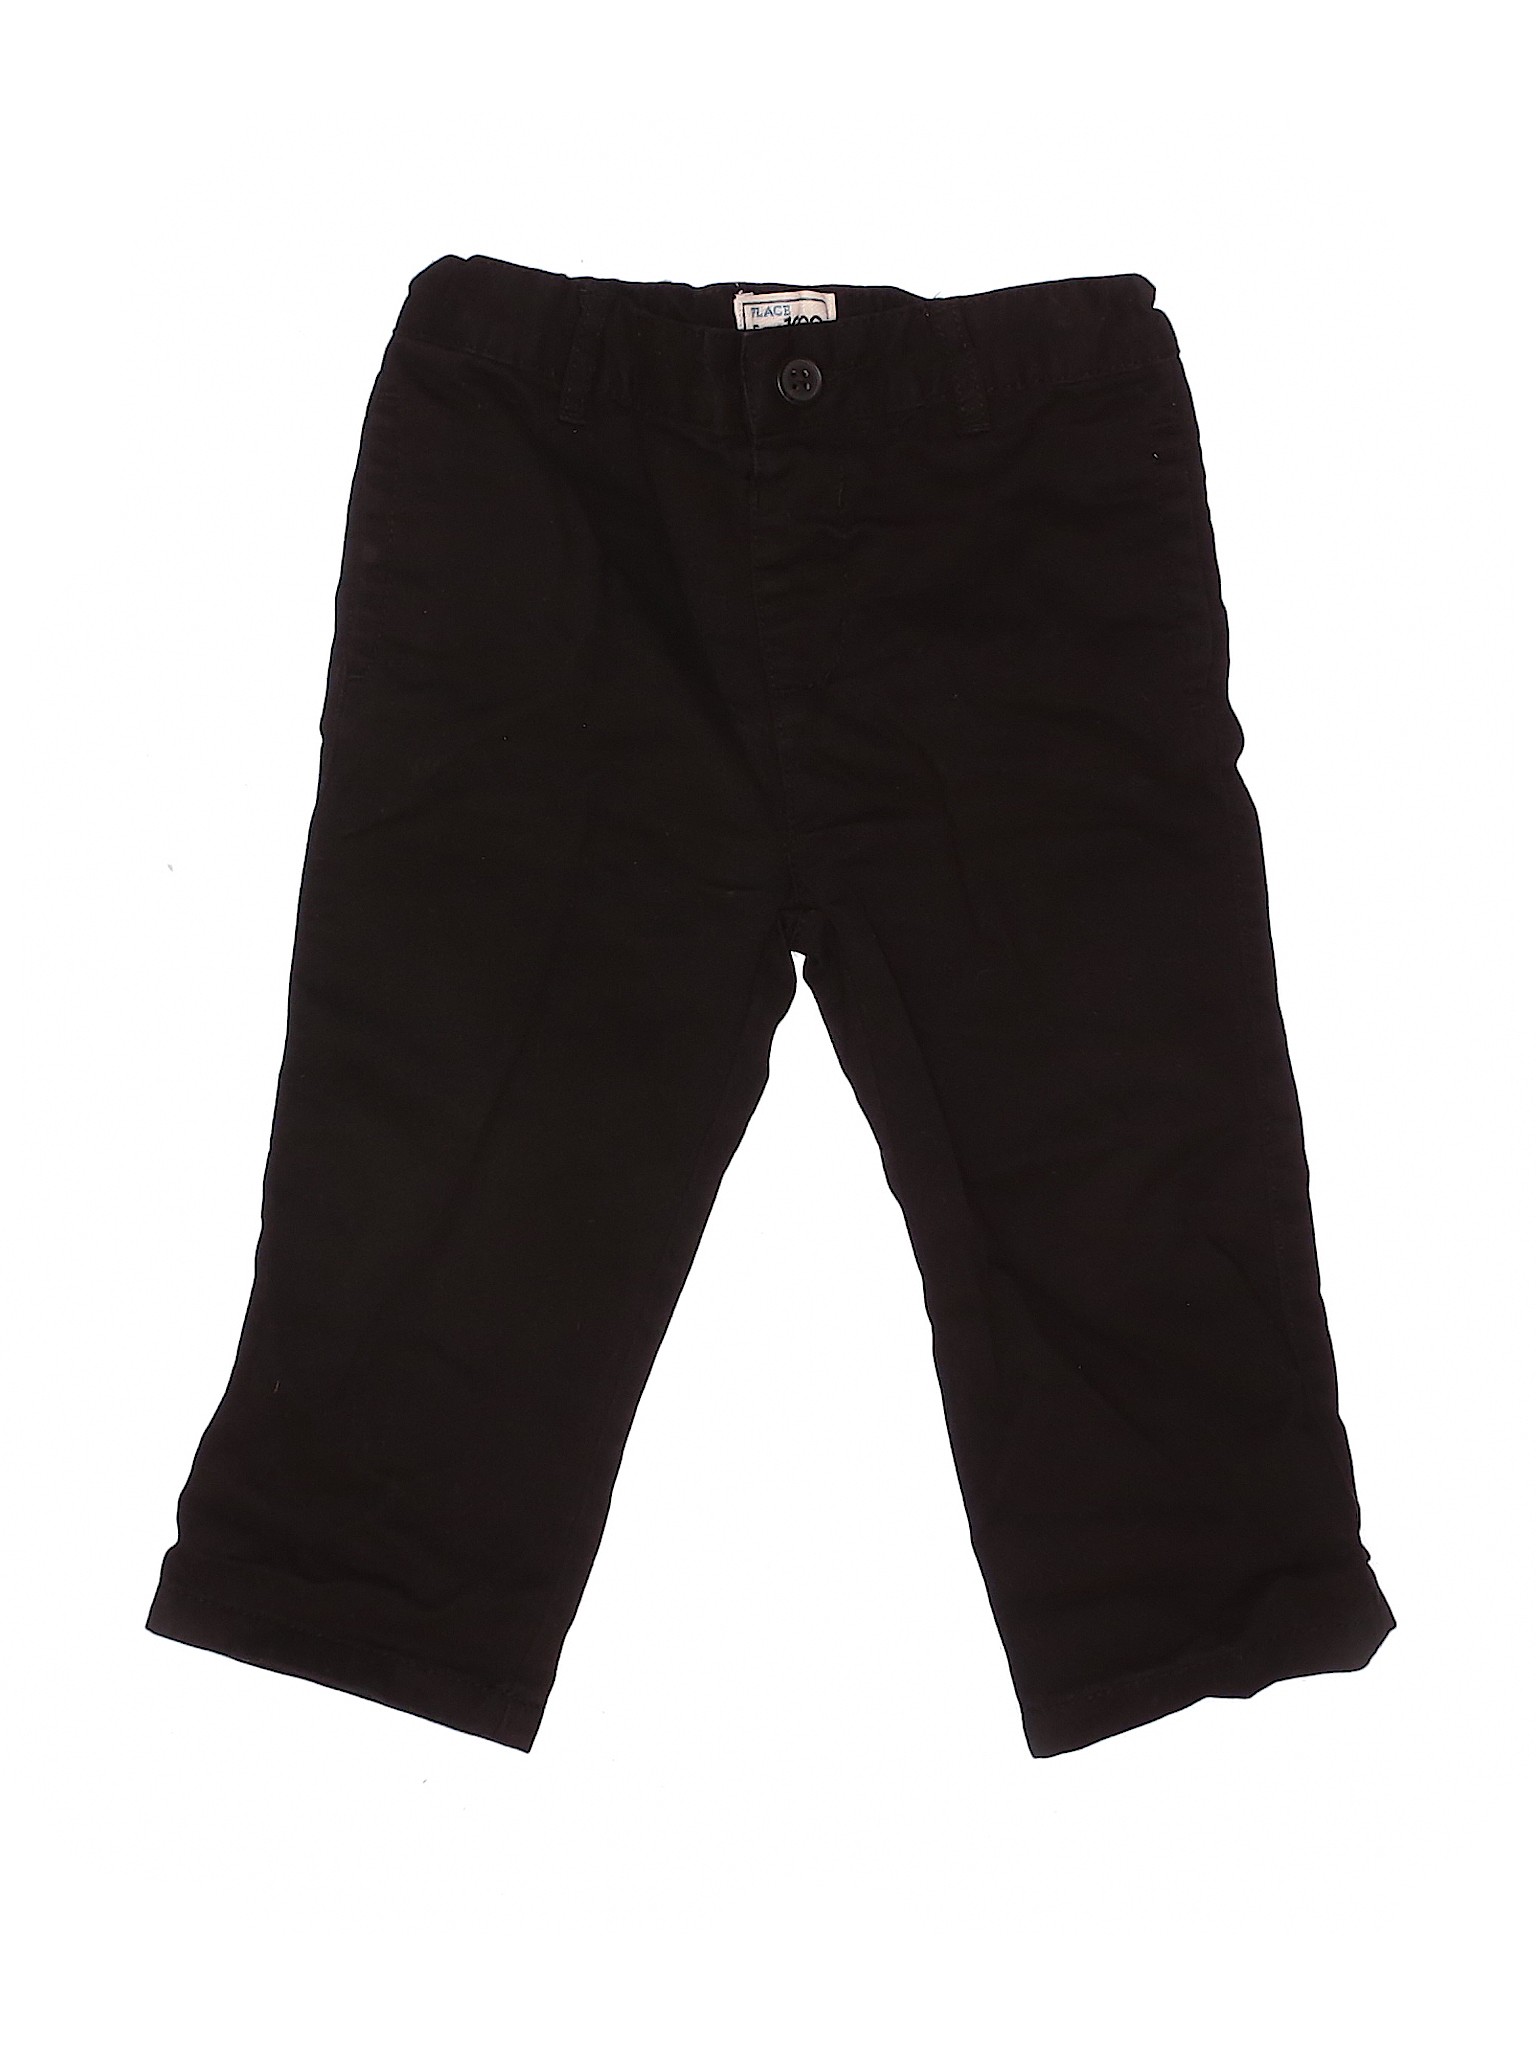 OshKosh B'gosh Boys Black Jeans 18-24 Months | eBay